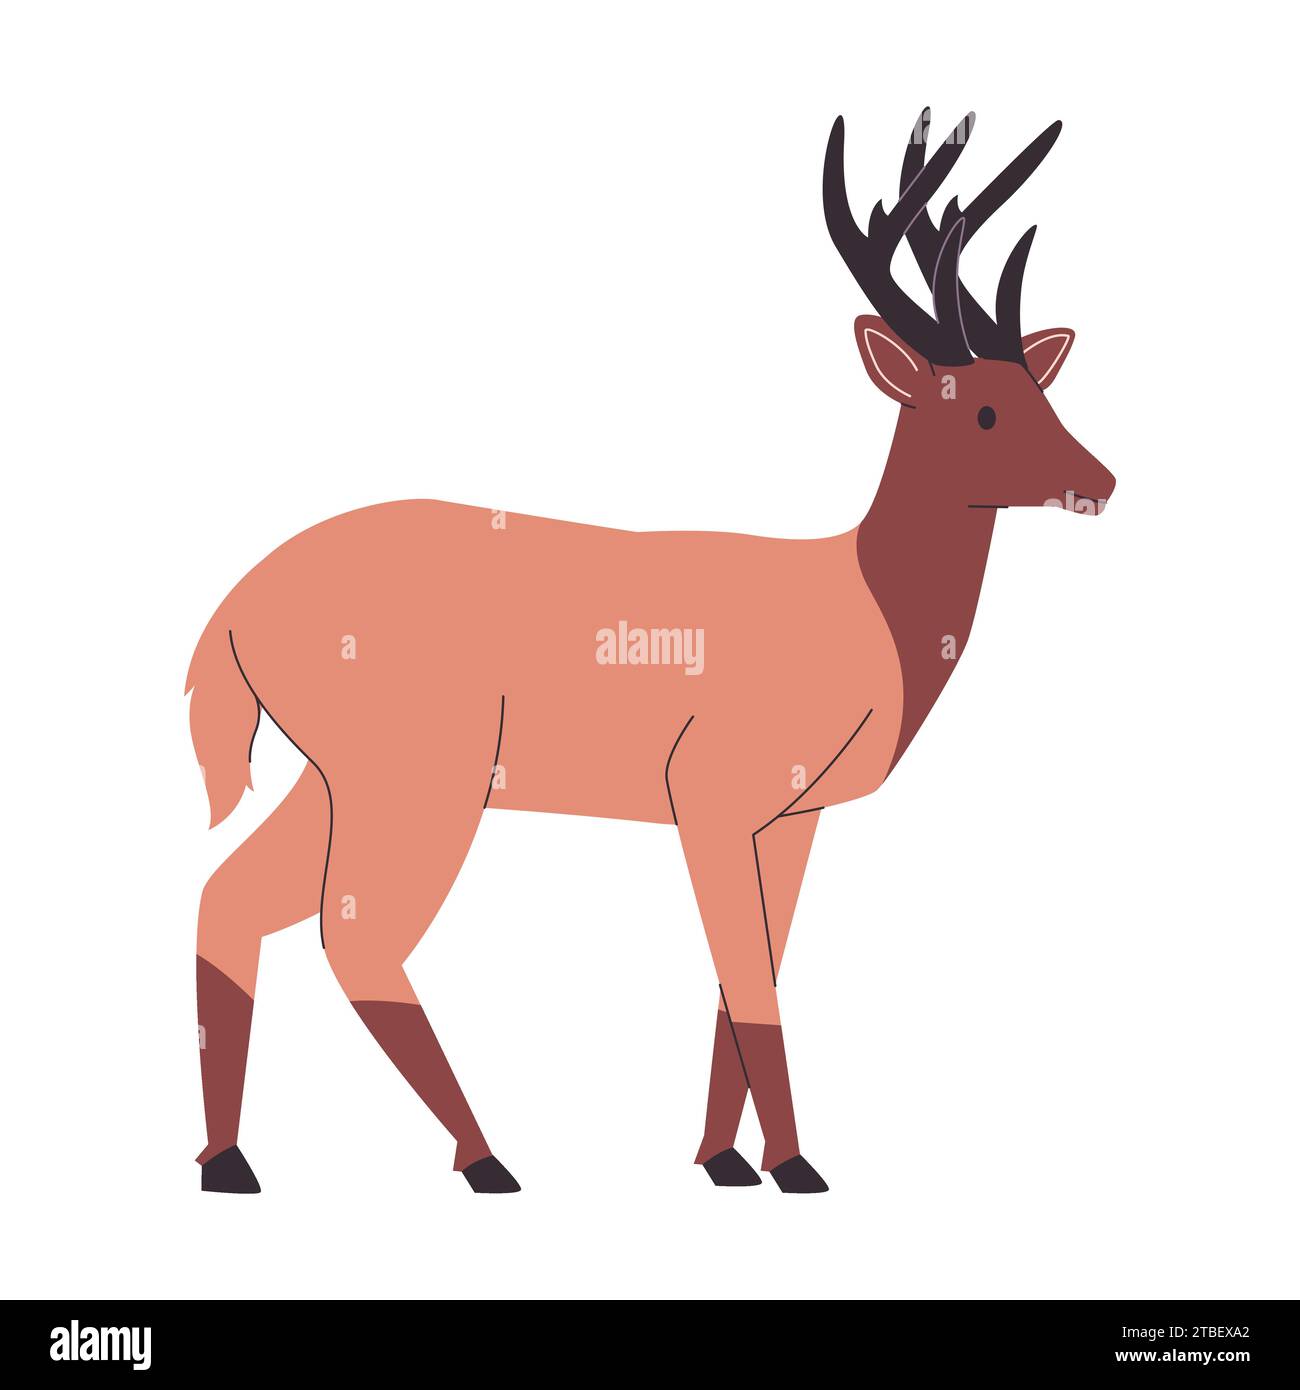 brown color rocky mountain elk or deer wild nature animal with big horns mammal herbivores creature Stock Vector